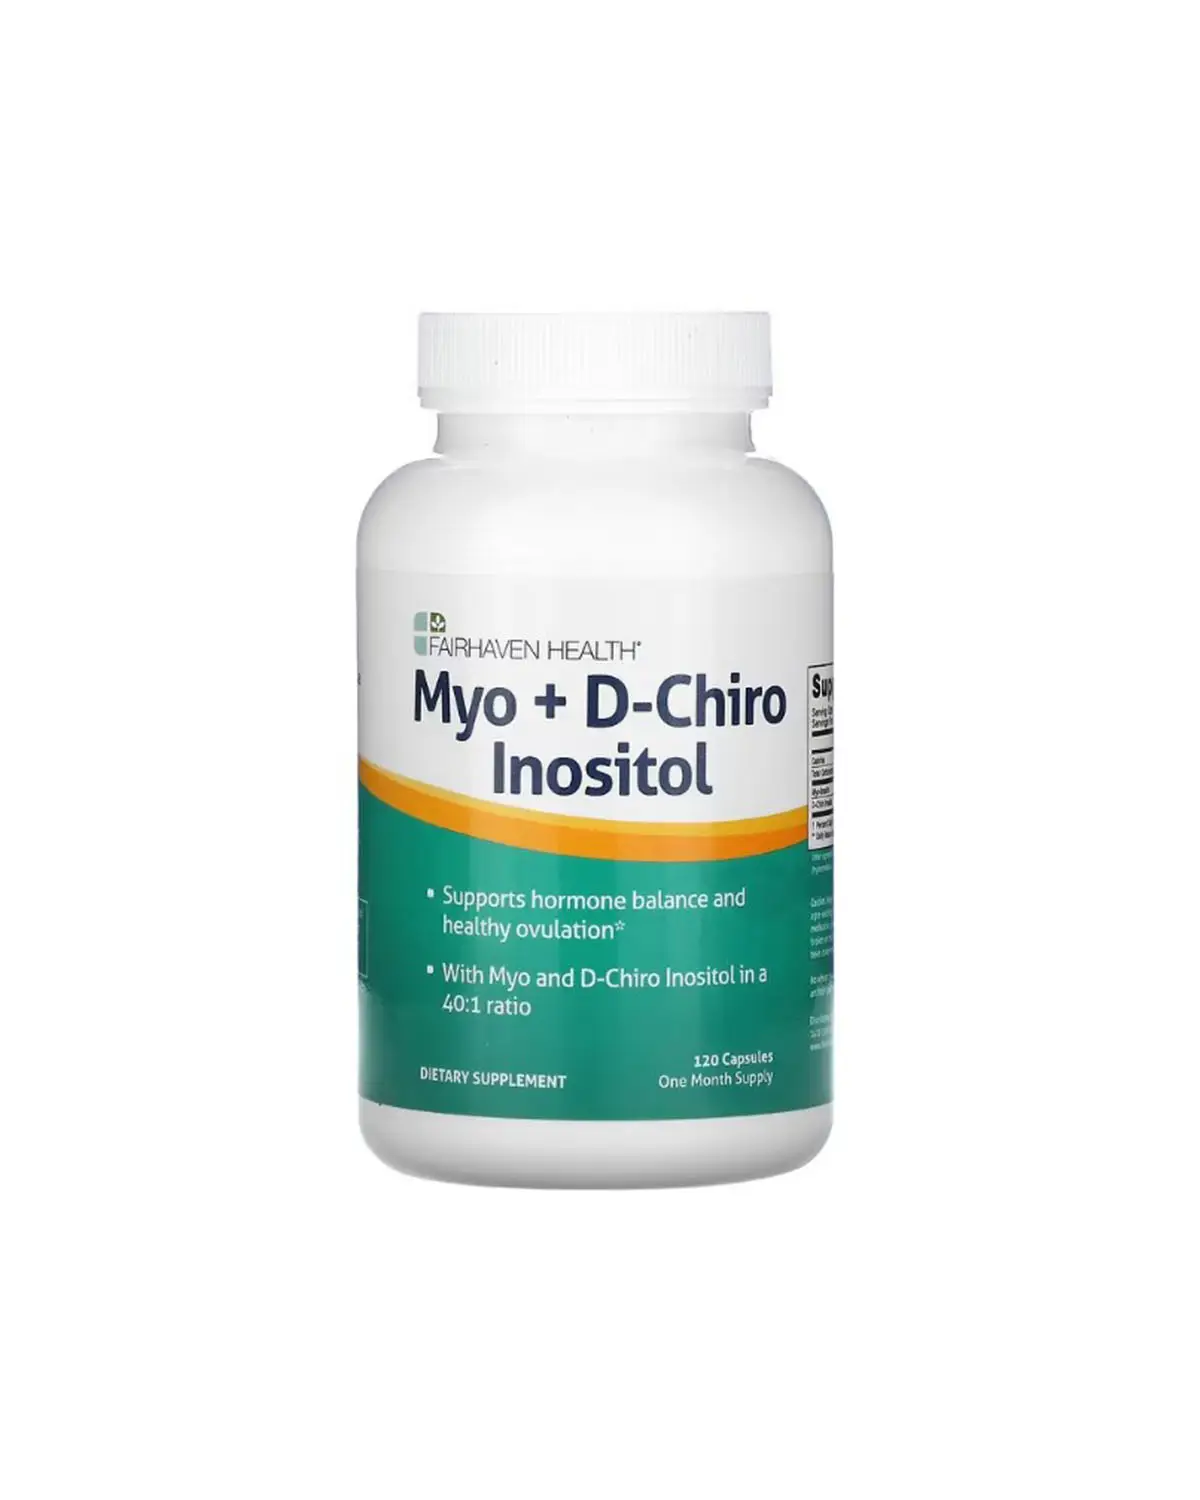 Міо-інозитол + D-хіро інозитол | 120 кап Fairhaven Health 202040641